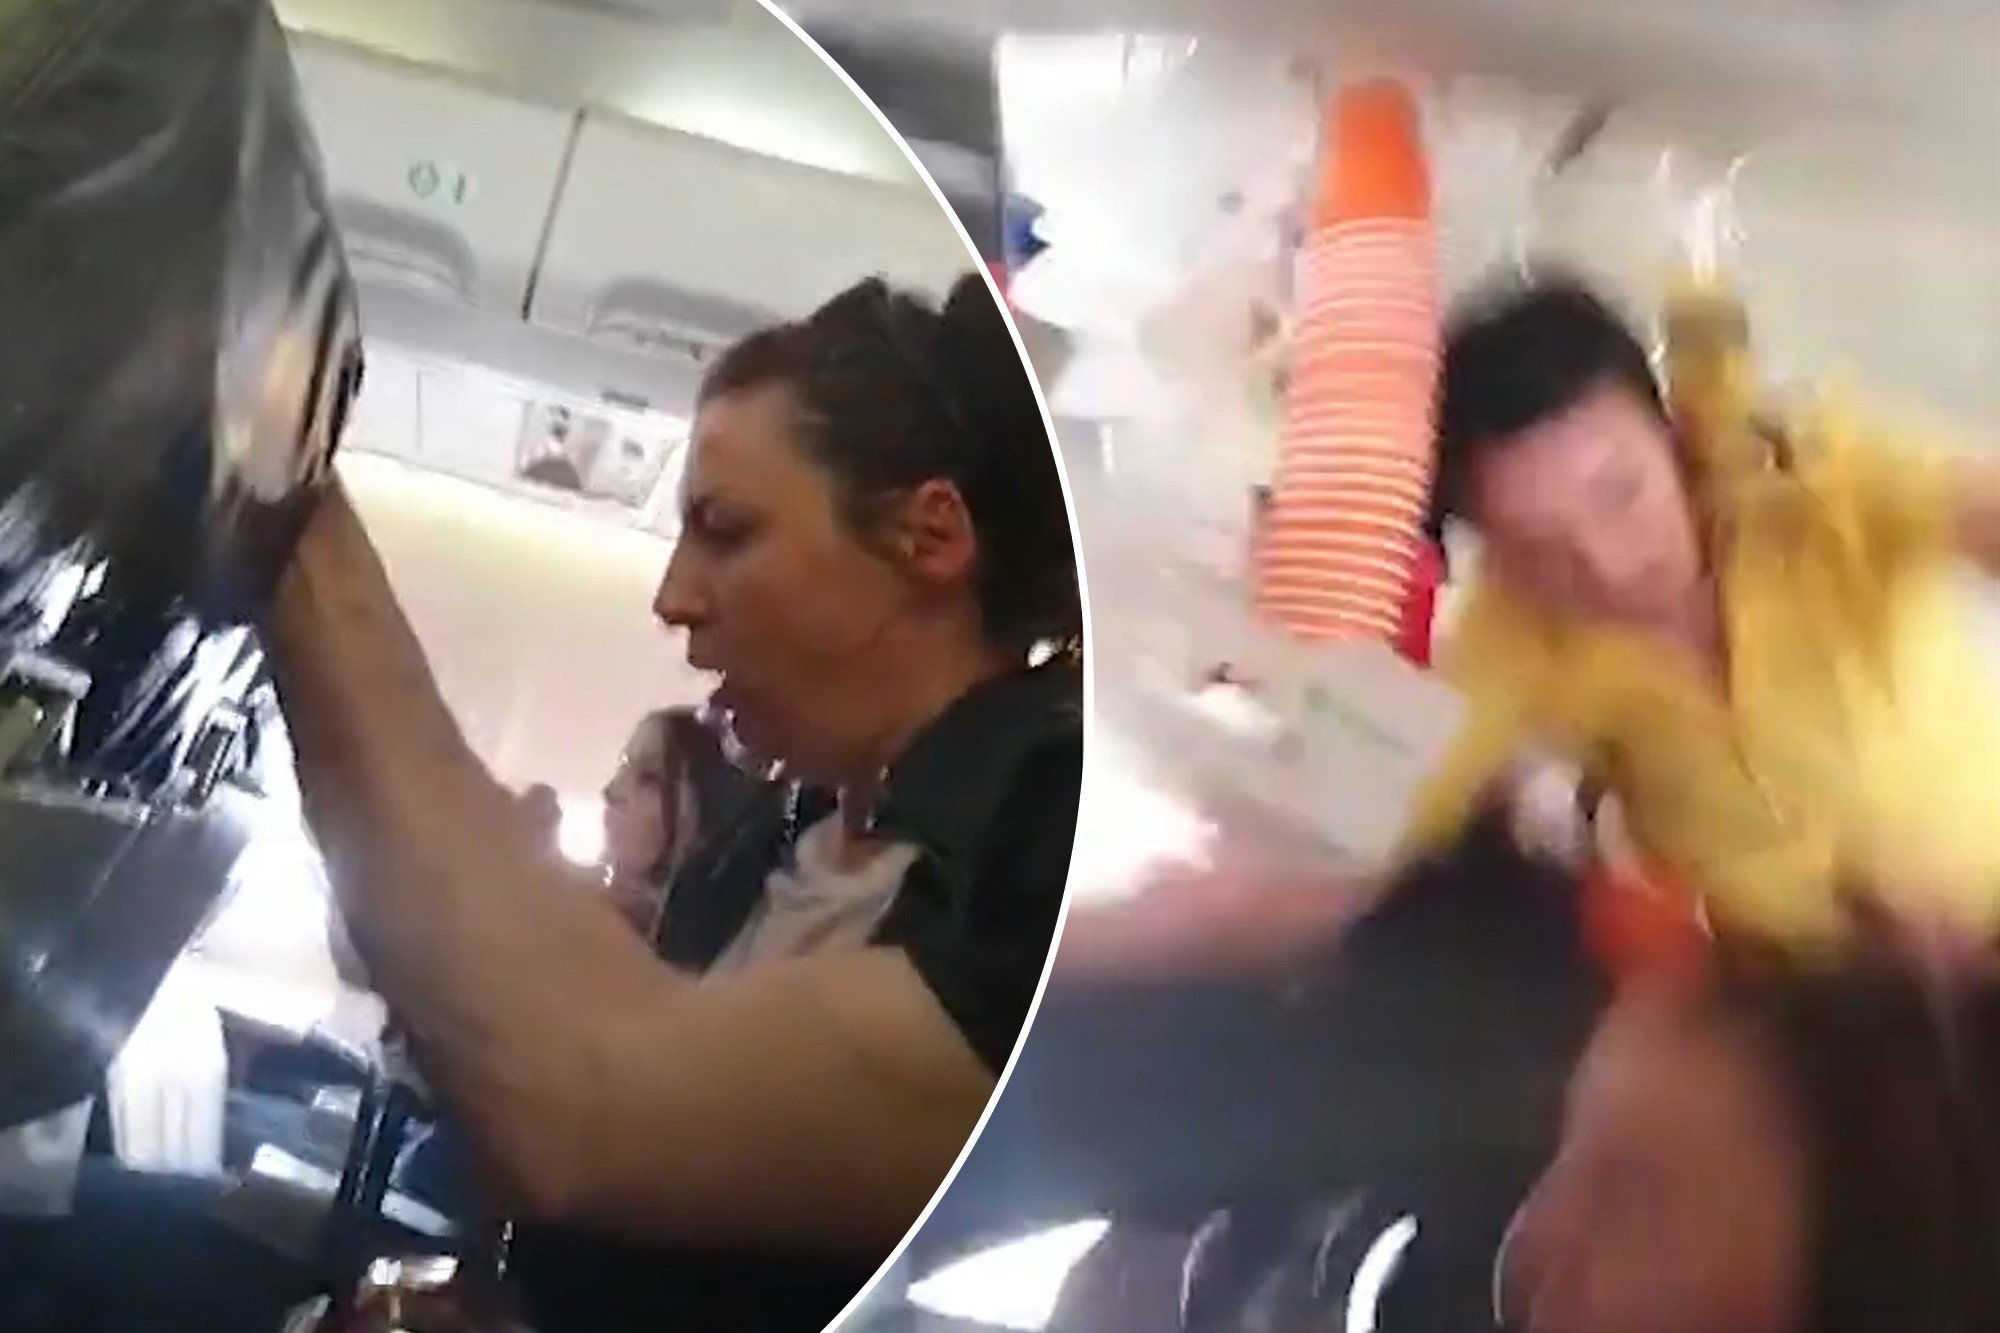  VIDEO: Momente cumplite în avion. Turbulențele au aruncat stewardesa și un cărucior cu băuturi în plafon